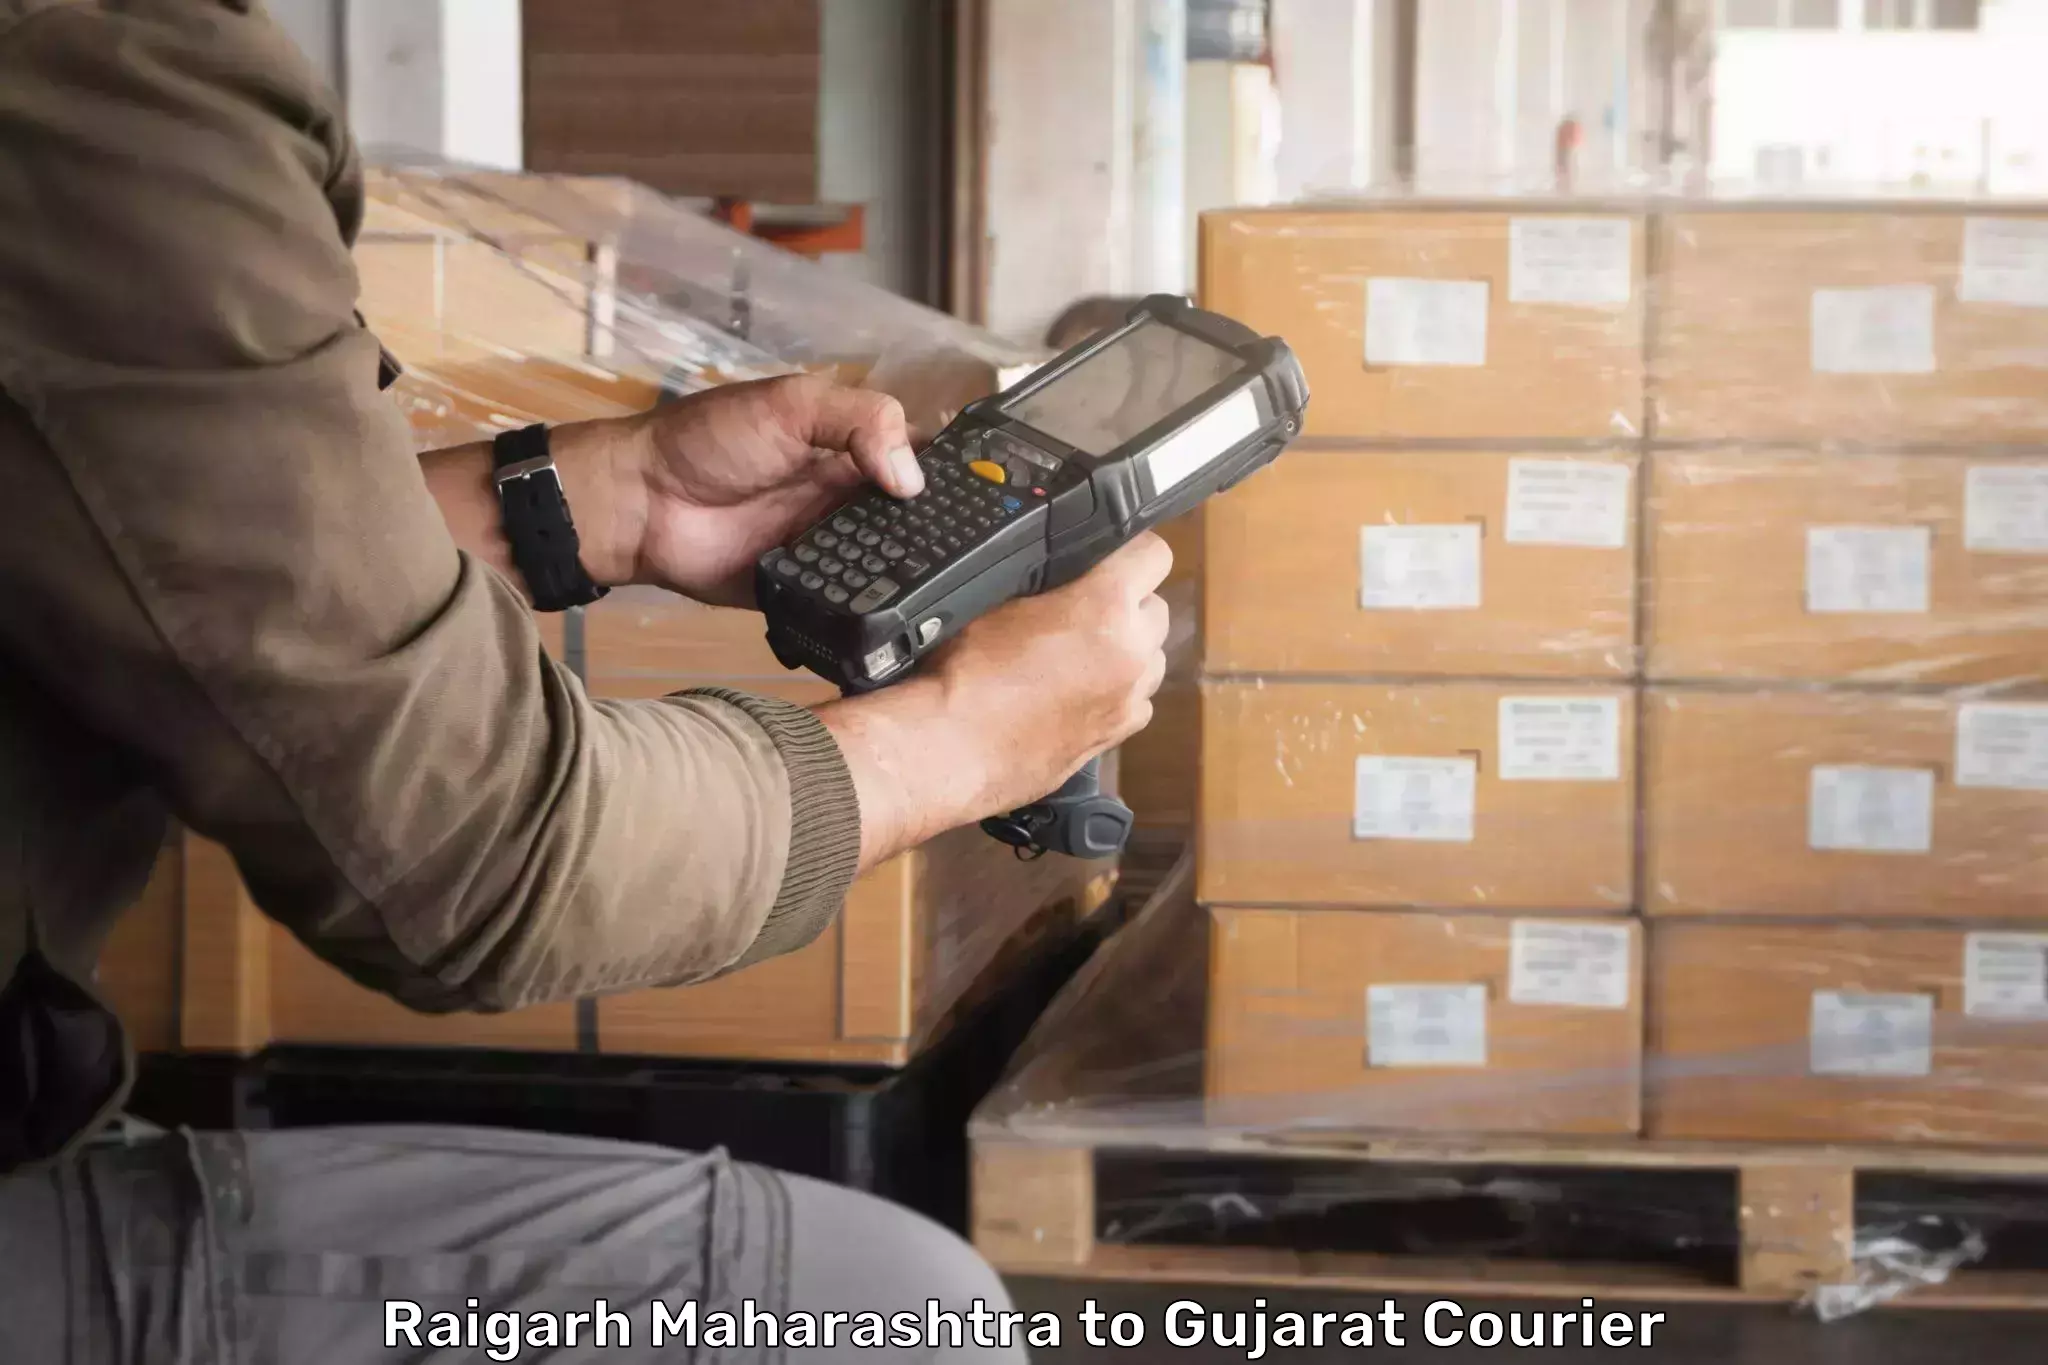 24/7 courier service Raigarh Maharashtra to Mundra